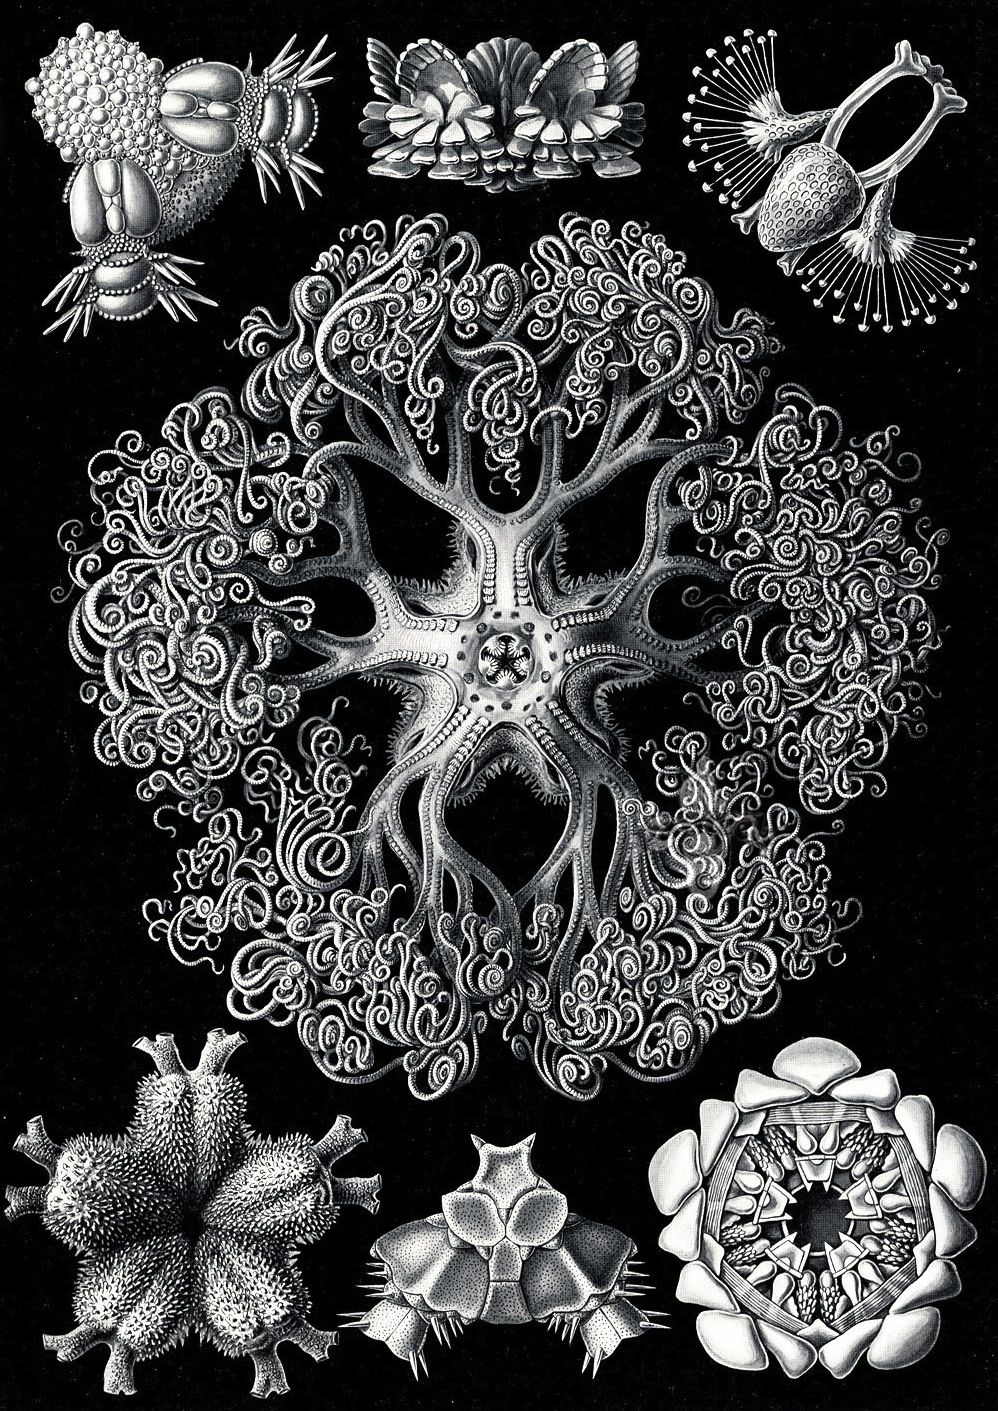 Kunstformen der Natur - Ernst Haeckel 1899-1904 (7).jpg